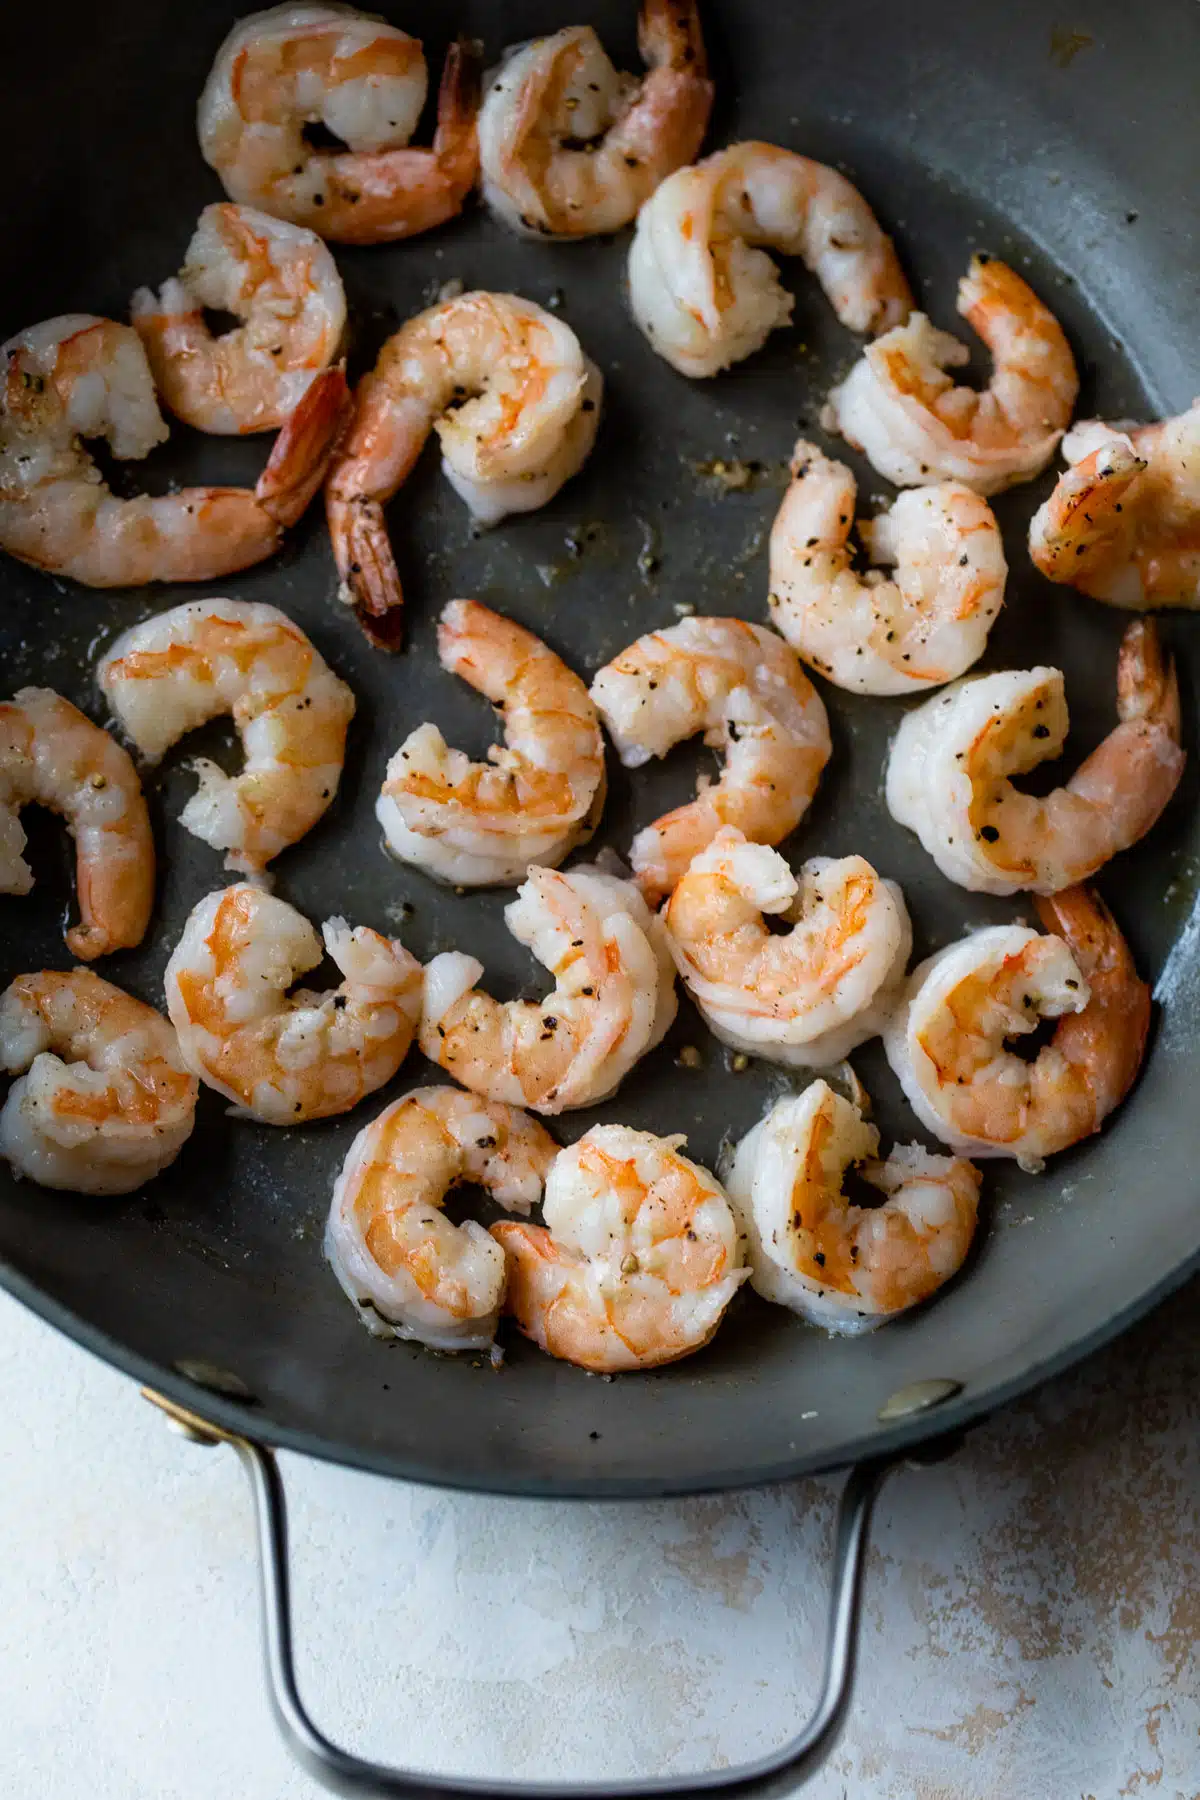 shrimp cooking in a skillet